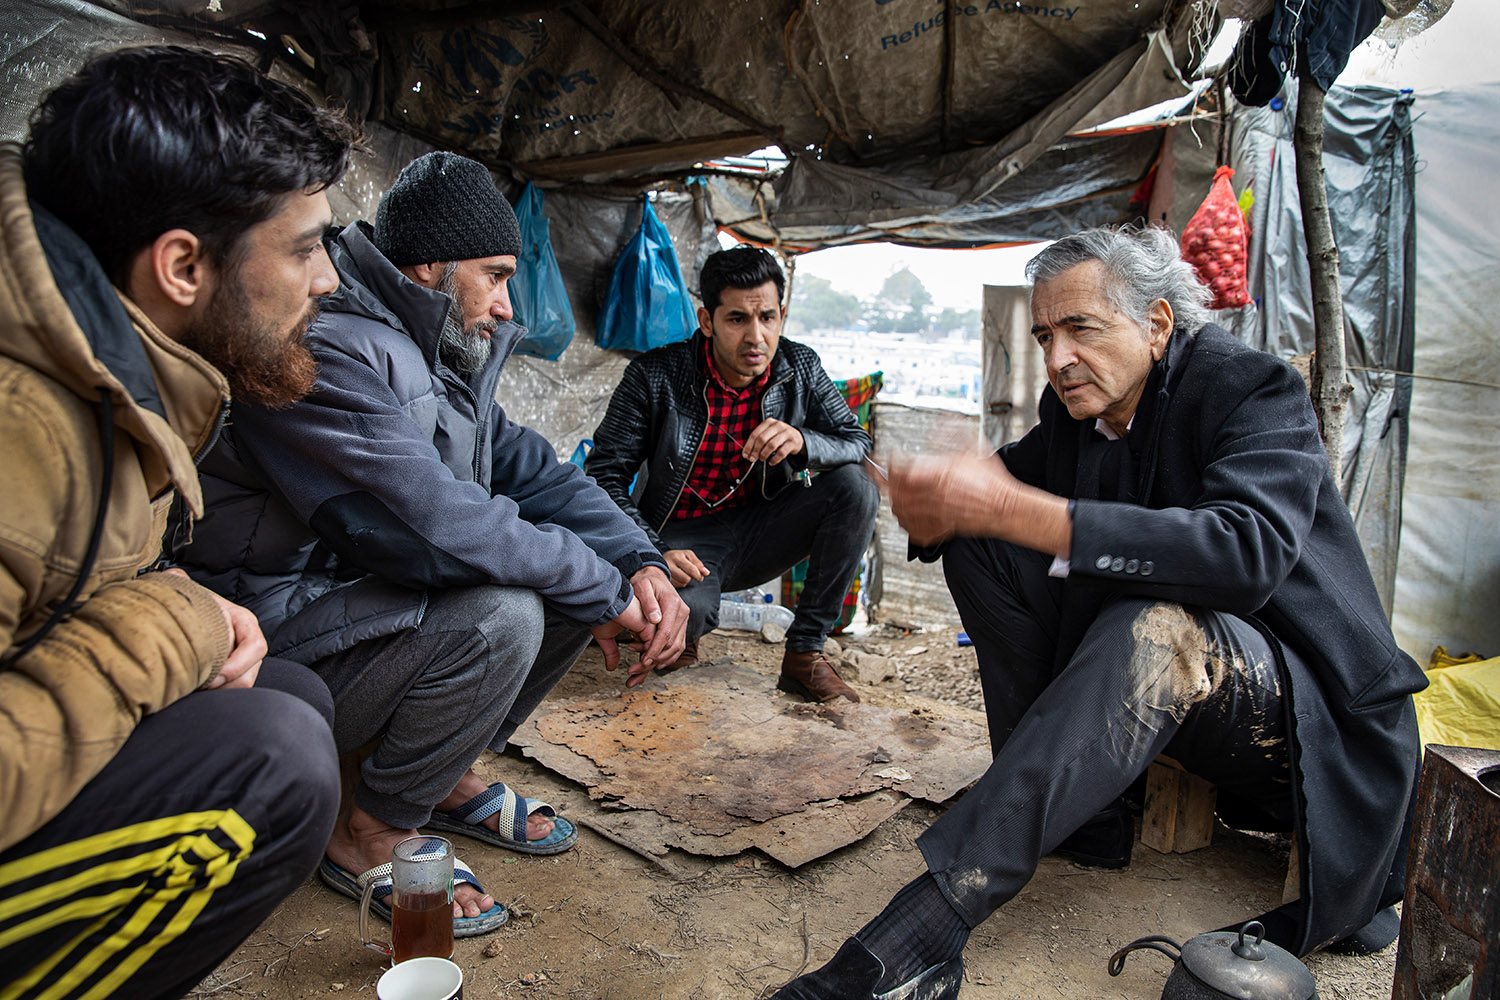 Bernard-Henri Lévy parle avec trois hommes, ils sont accroupis dans la boue sous une tente.